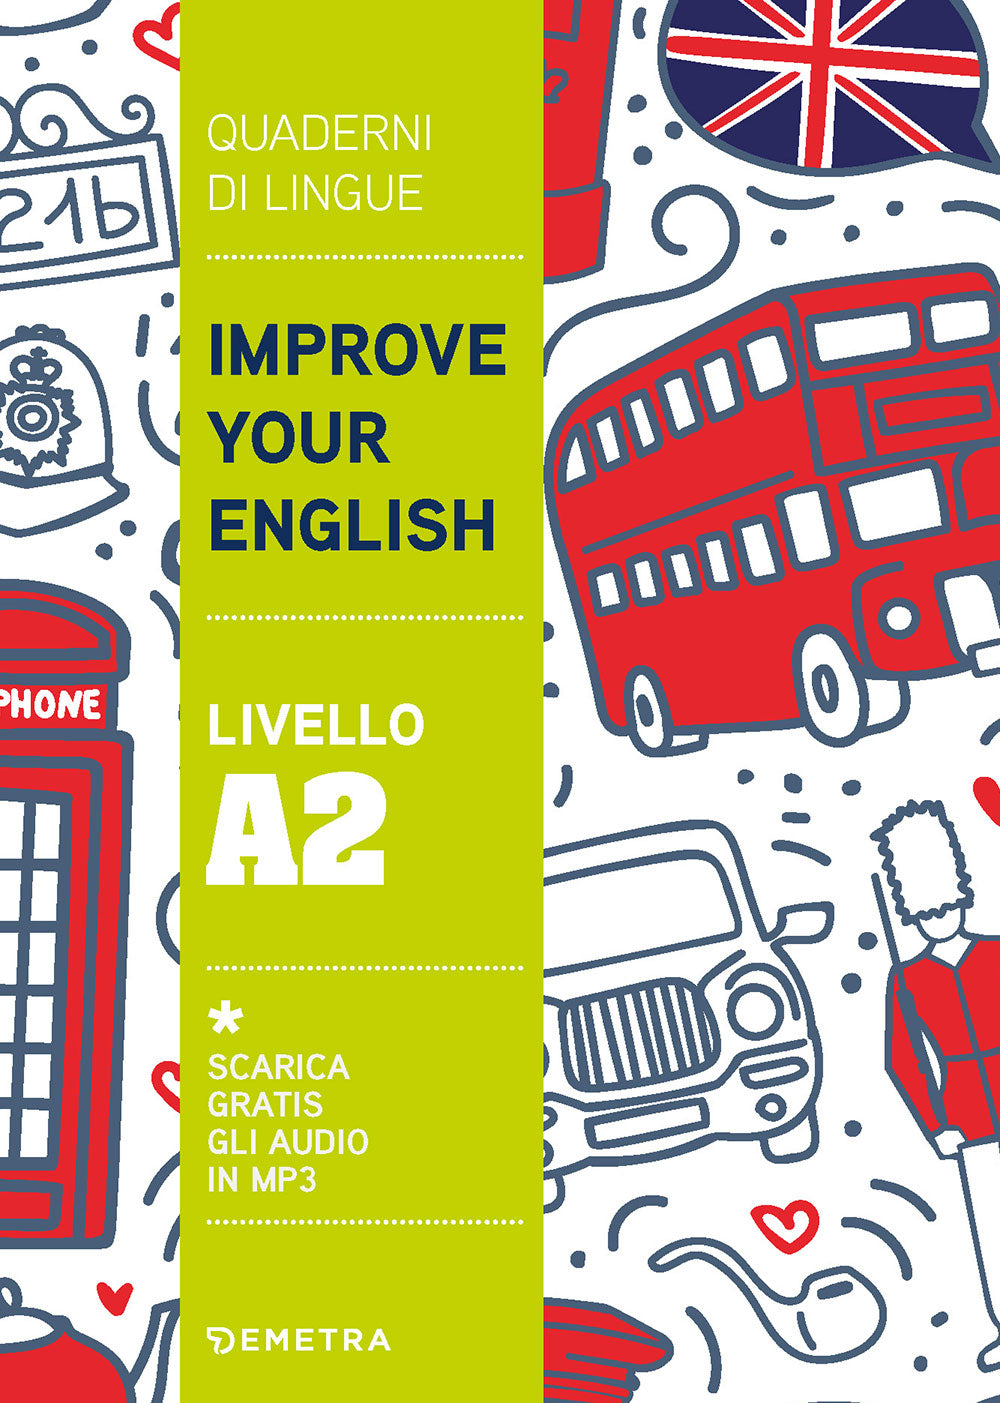 Improve your English livello A2::Scarica gratis gli audio in MP3